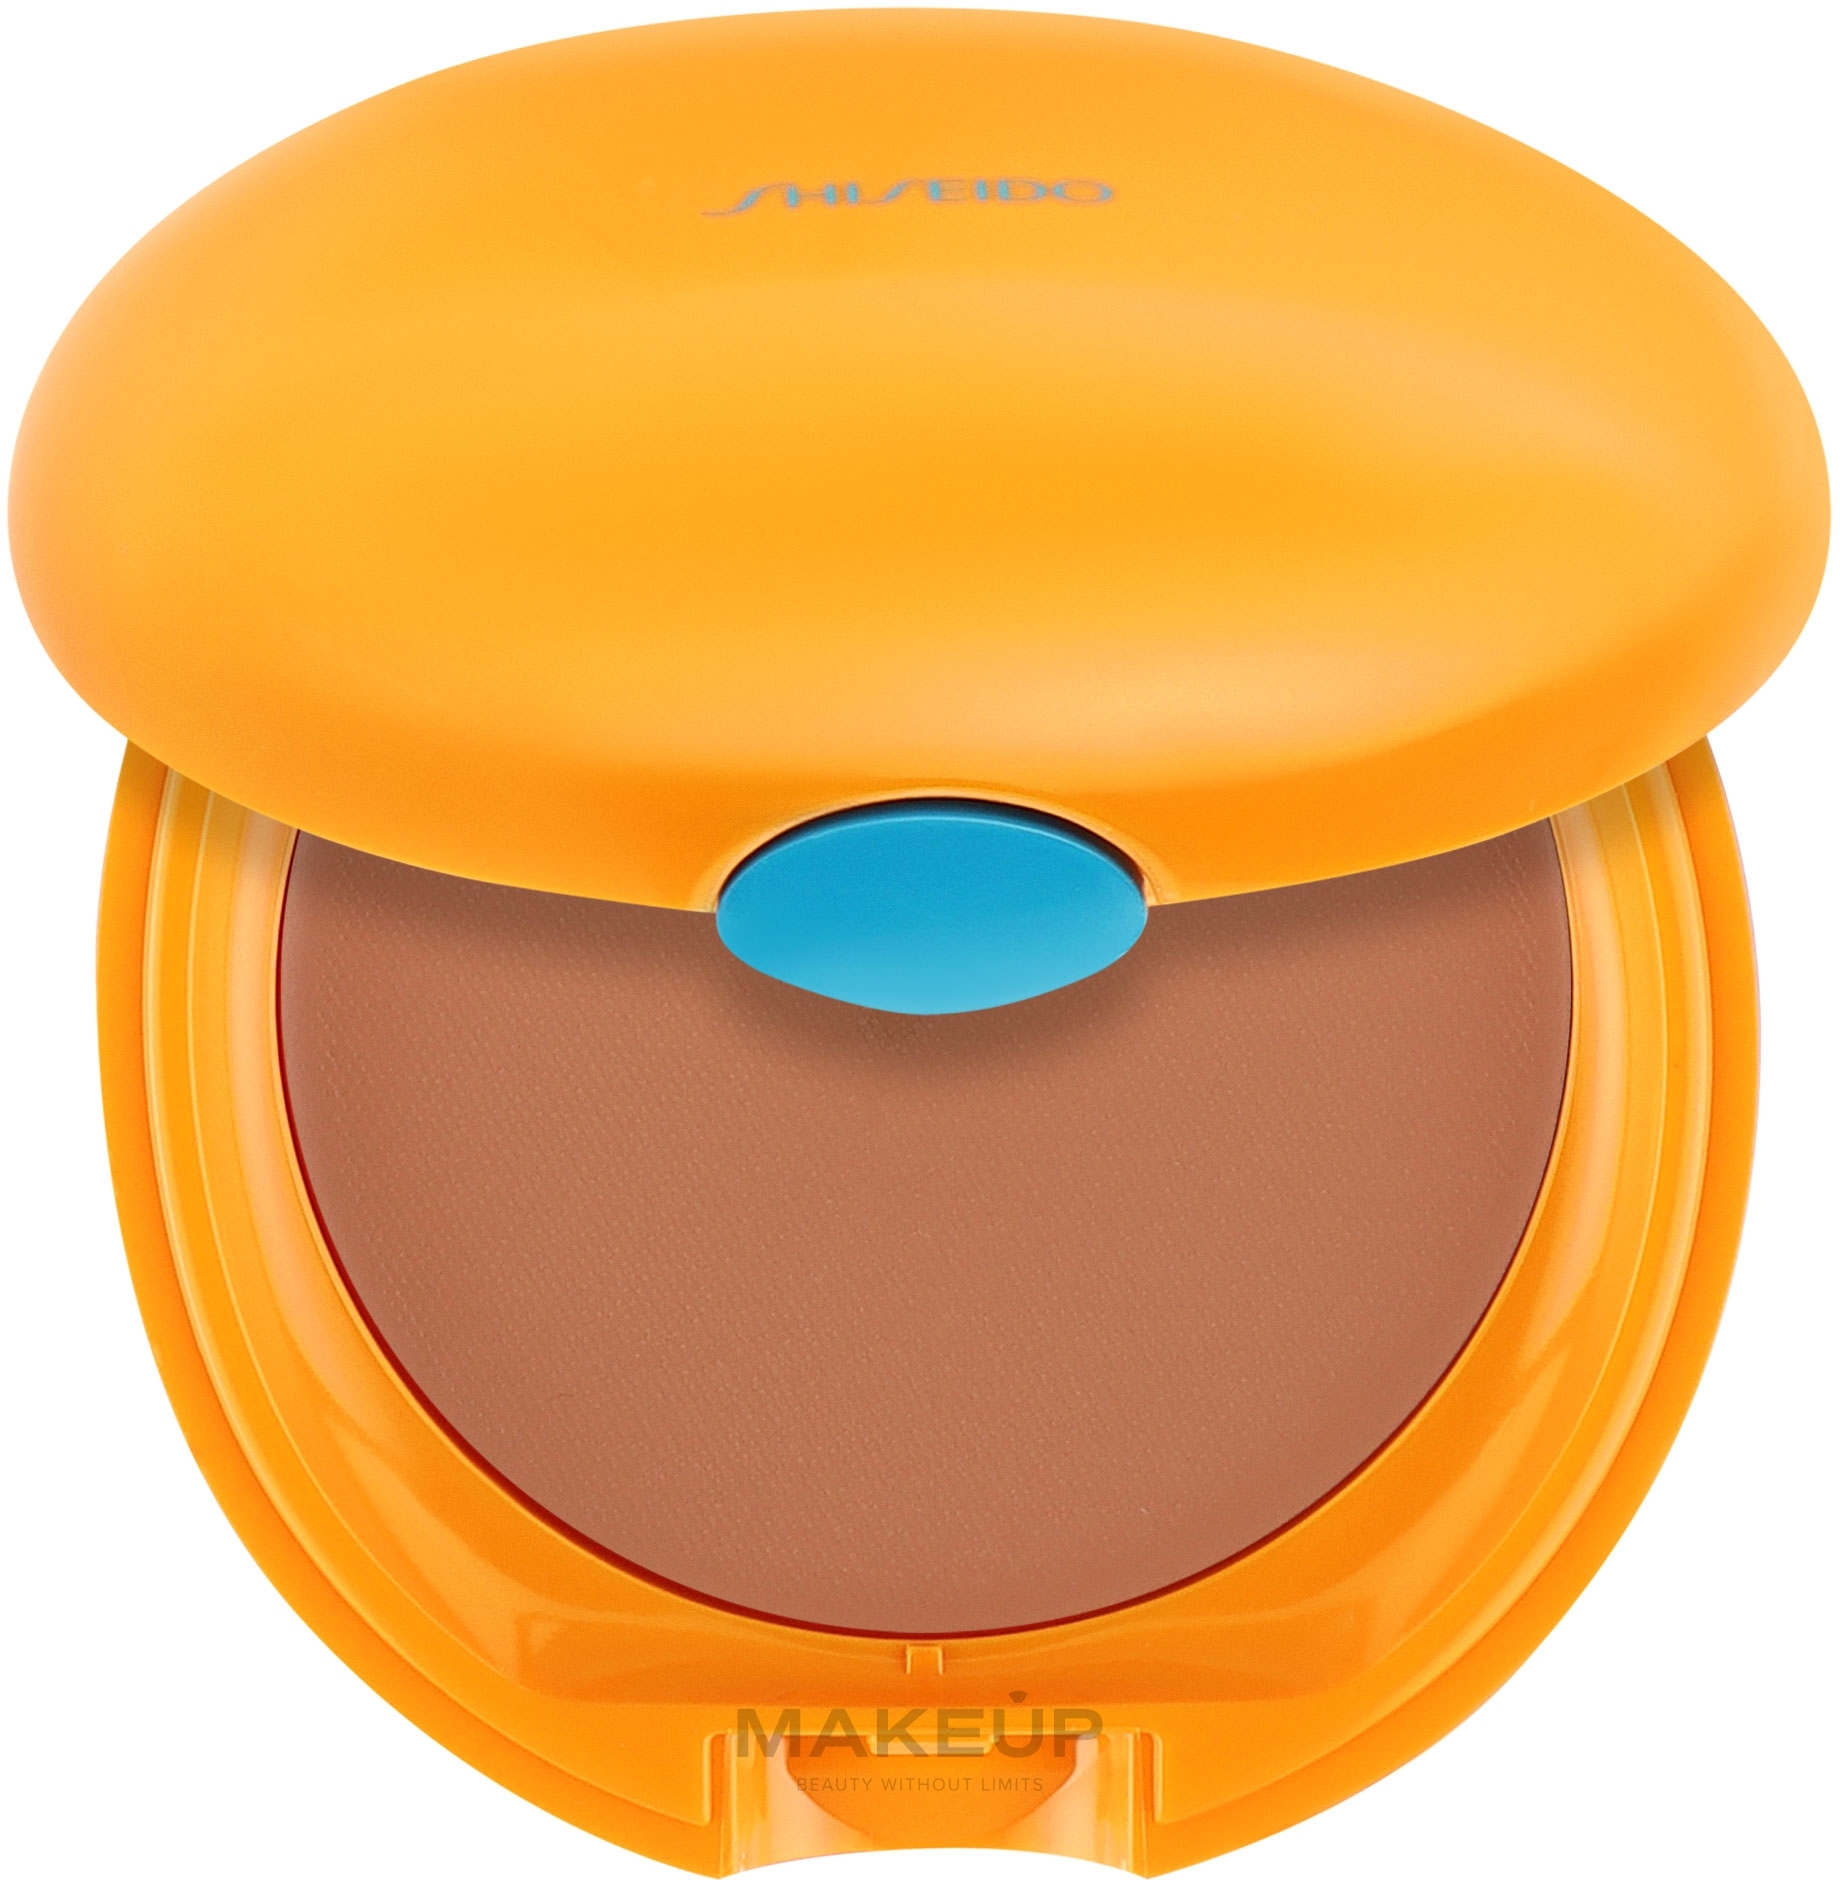 PRZECENA! Brązujący podkład w kompakcie SPF 6 - Shiseido Tanning Compact Foundation N * — Zdjęcie Honey